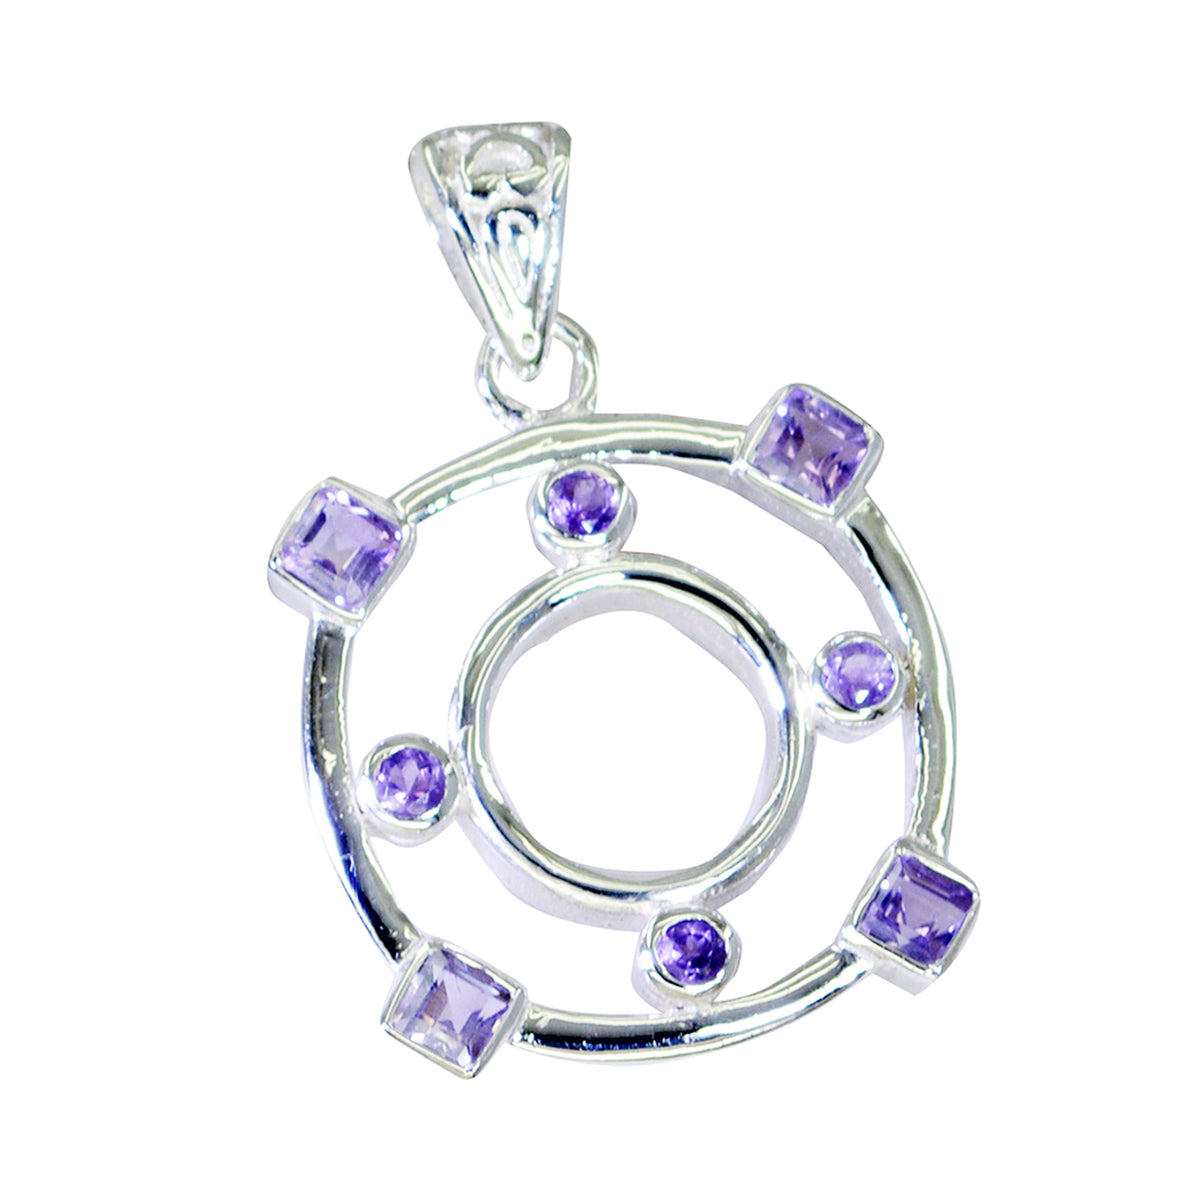 riyo jolies pierres précieuses pendentif en argent améthyste violette multi facettes cadeau pour sœur